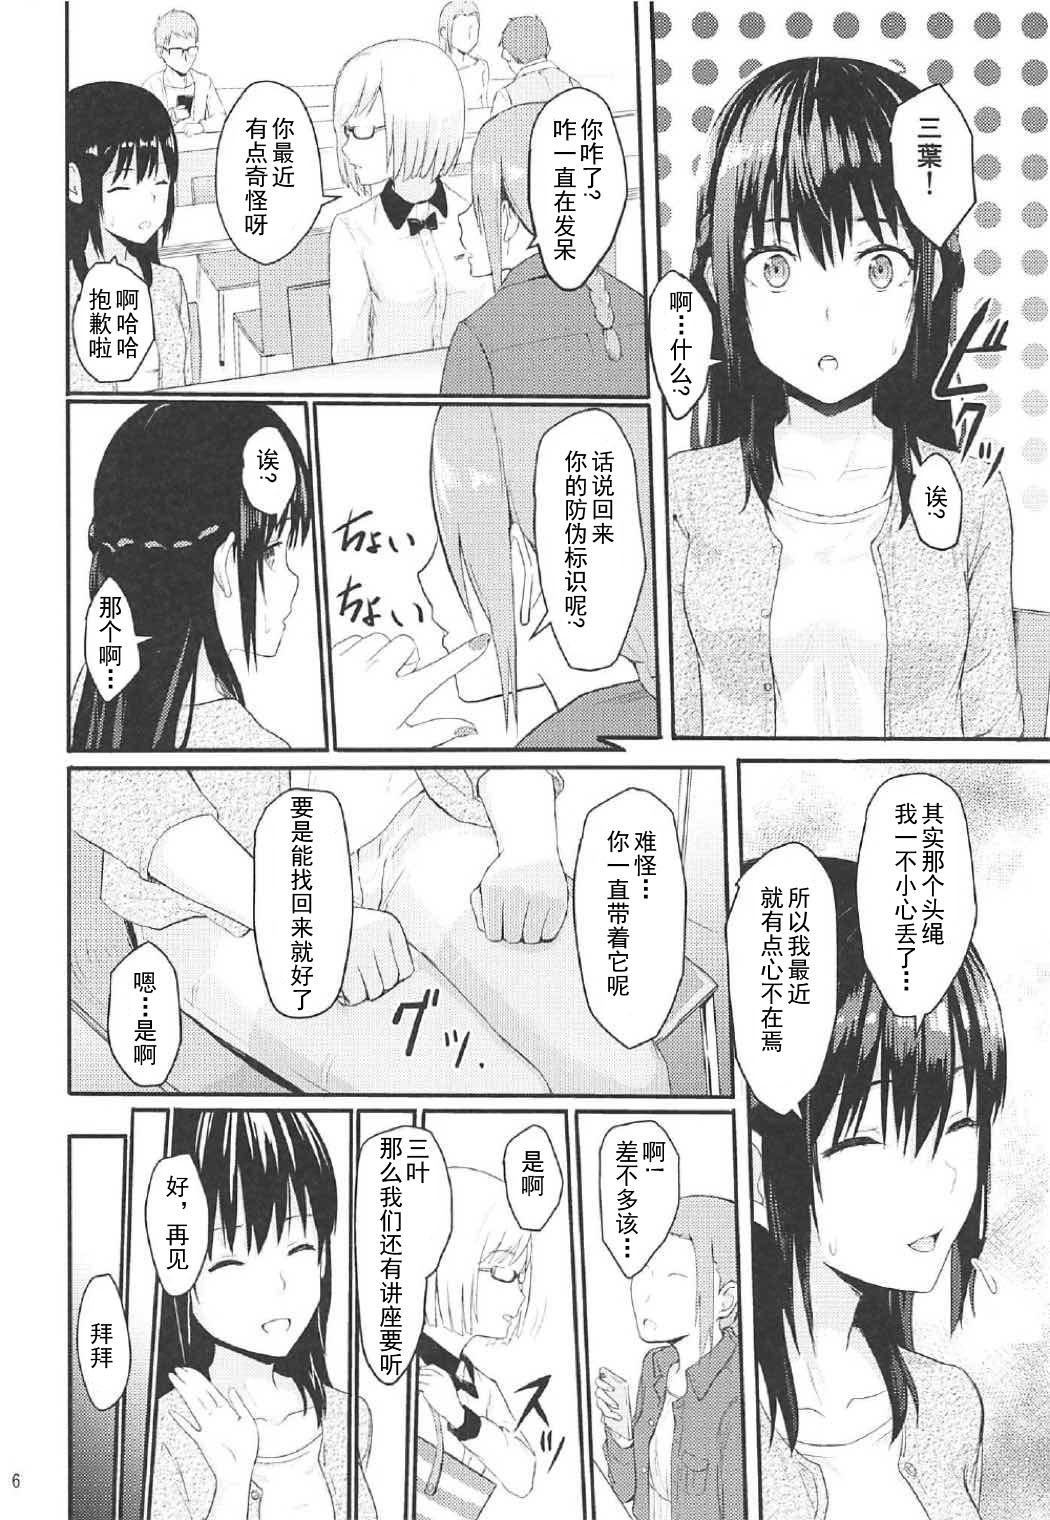 Squirt Mitsuha - Kimi no na wa. Handjob - Page 5